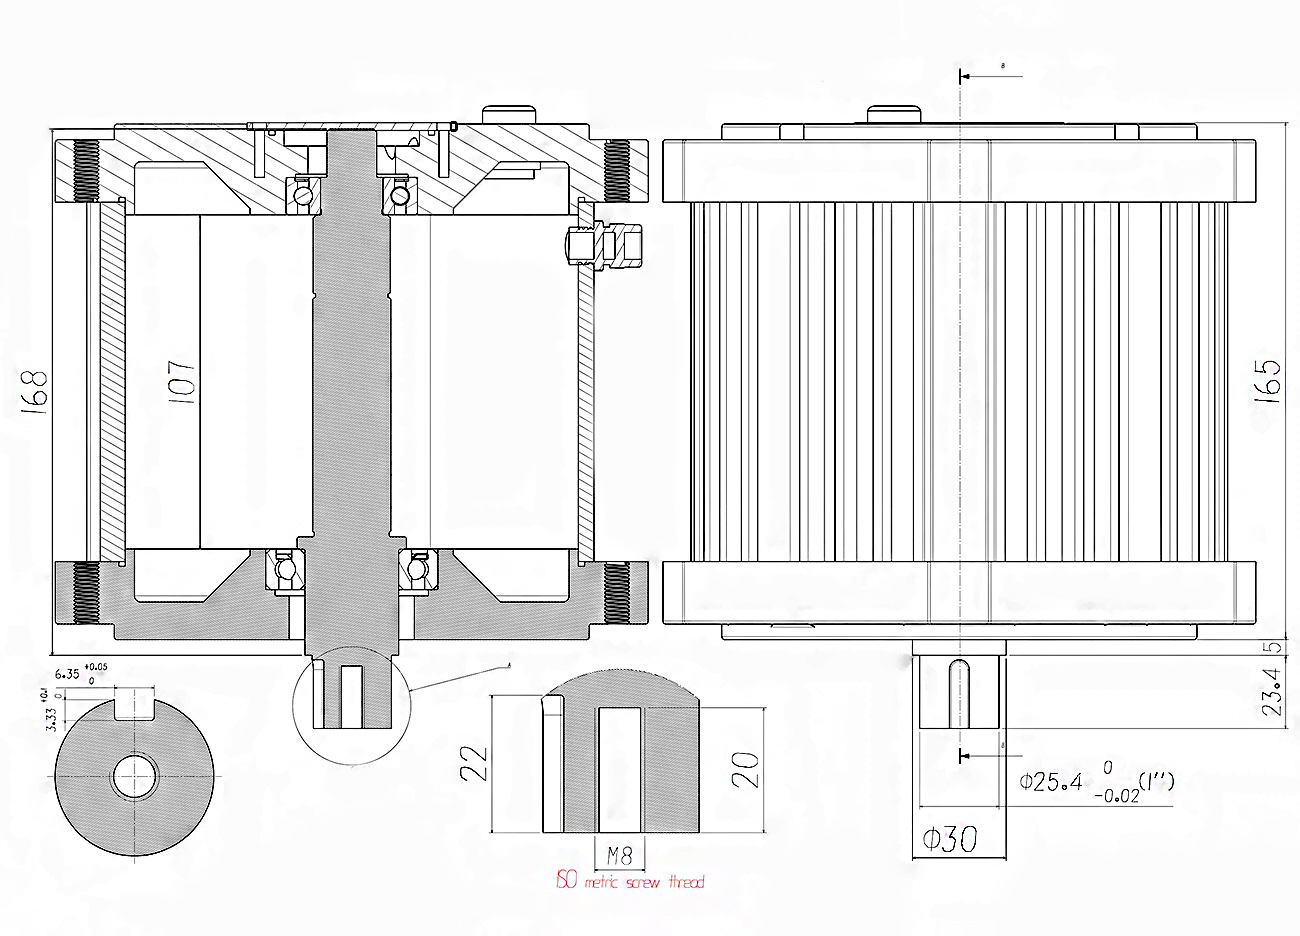 Plan et dimensions moteur moto 5000w central brushless BLDC : vue du dessus